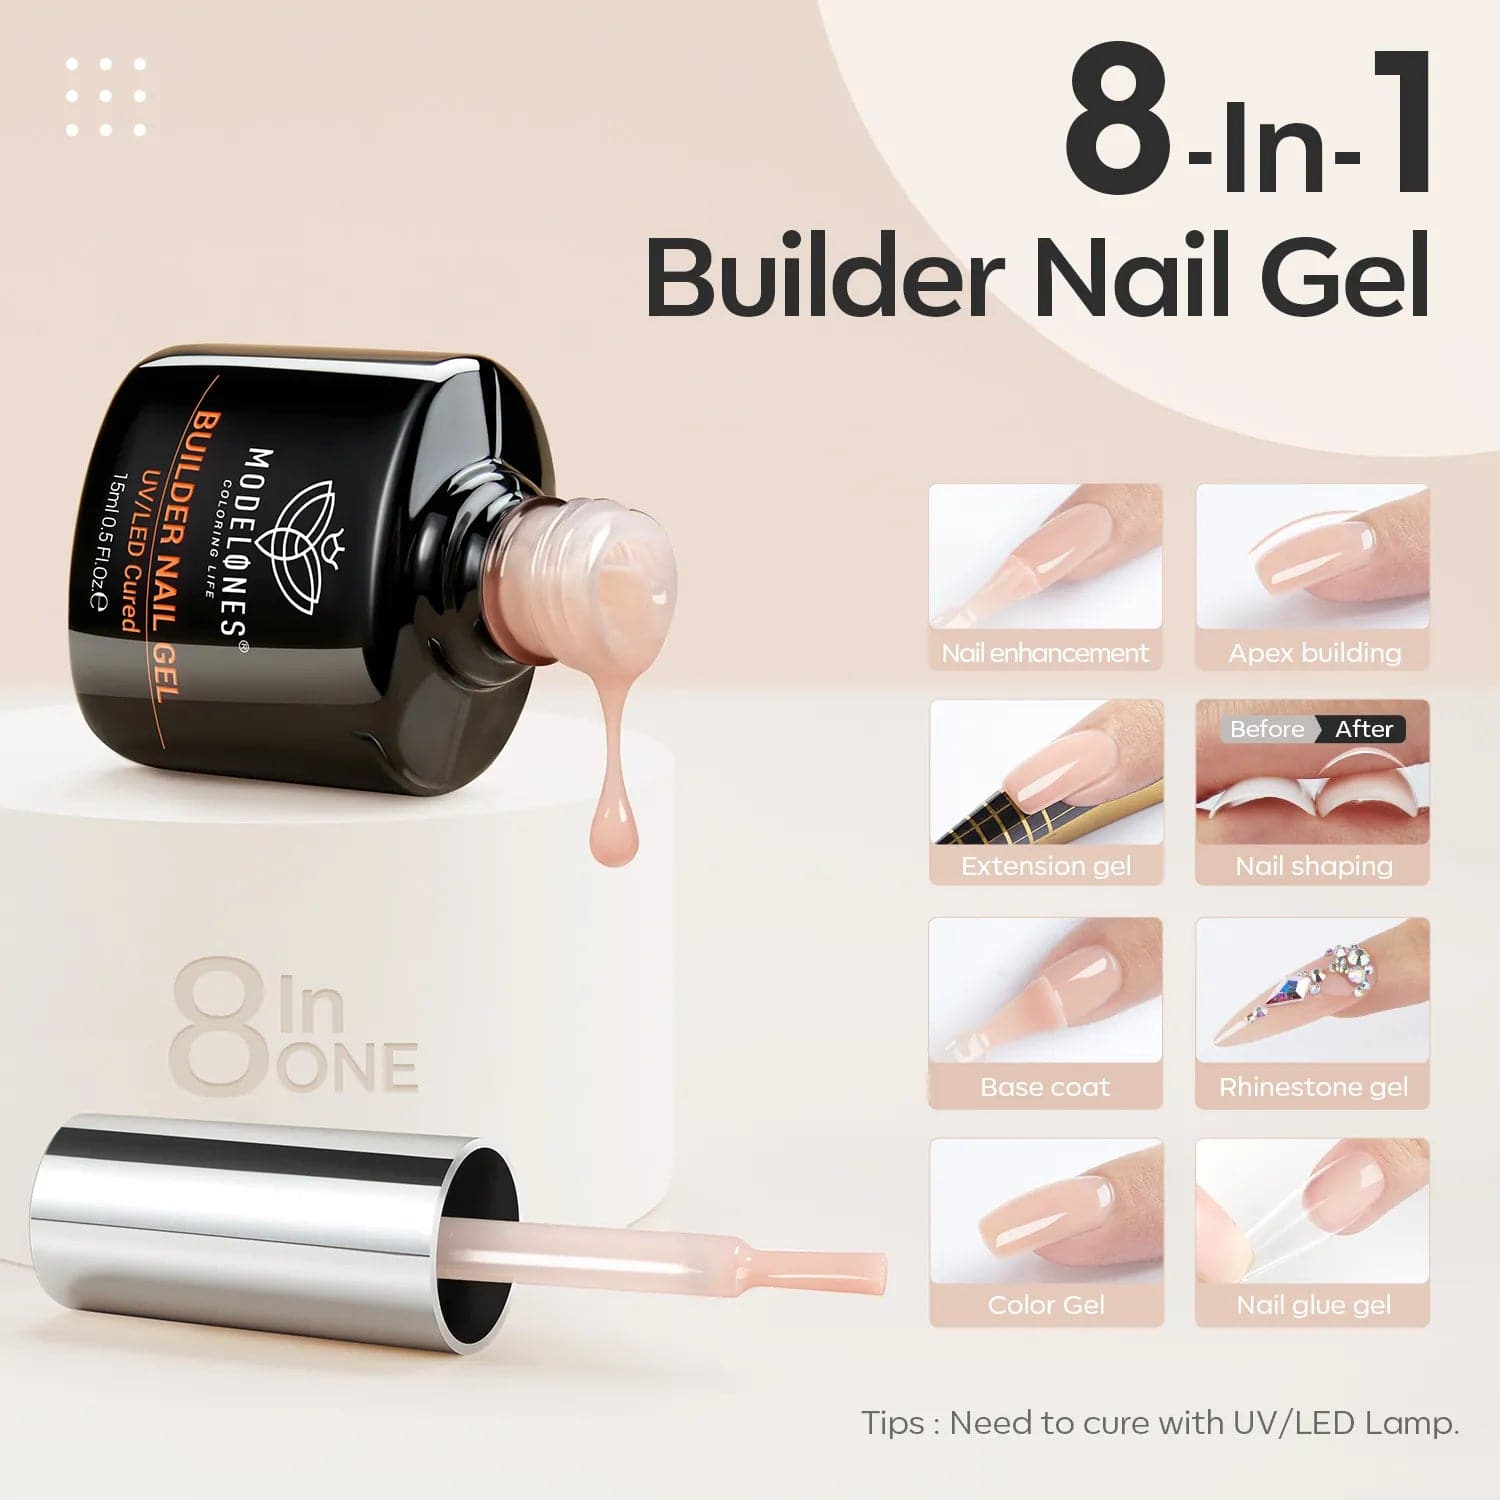 8-In-1 Nude Brown Builder Nail Gel 15ml